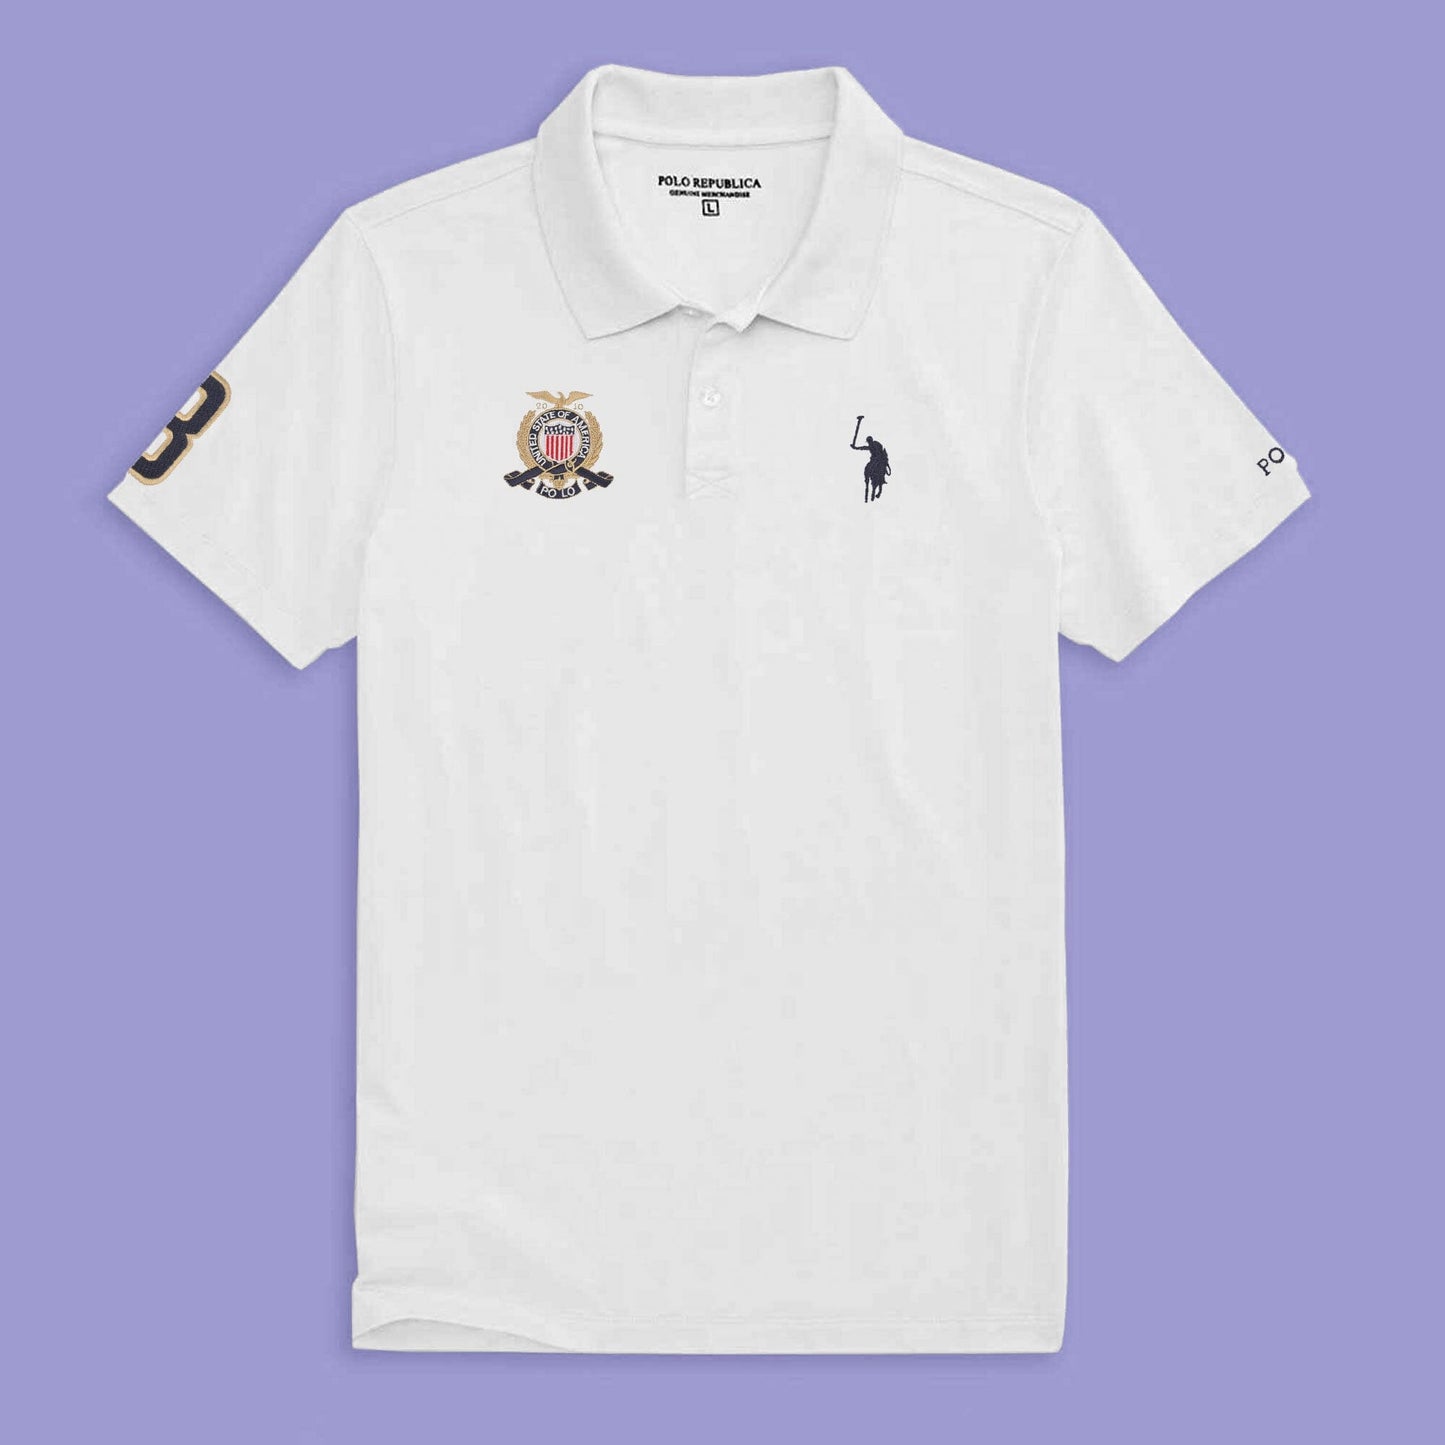 Polo Republica Men's USA Crest Pony & 8 Embroidered Short Sleeve Polo Shirt Men's Polo Shirt Polo Republica 